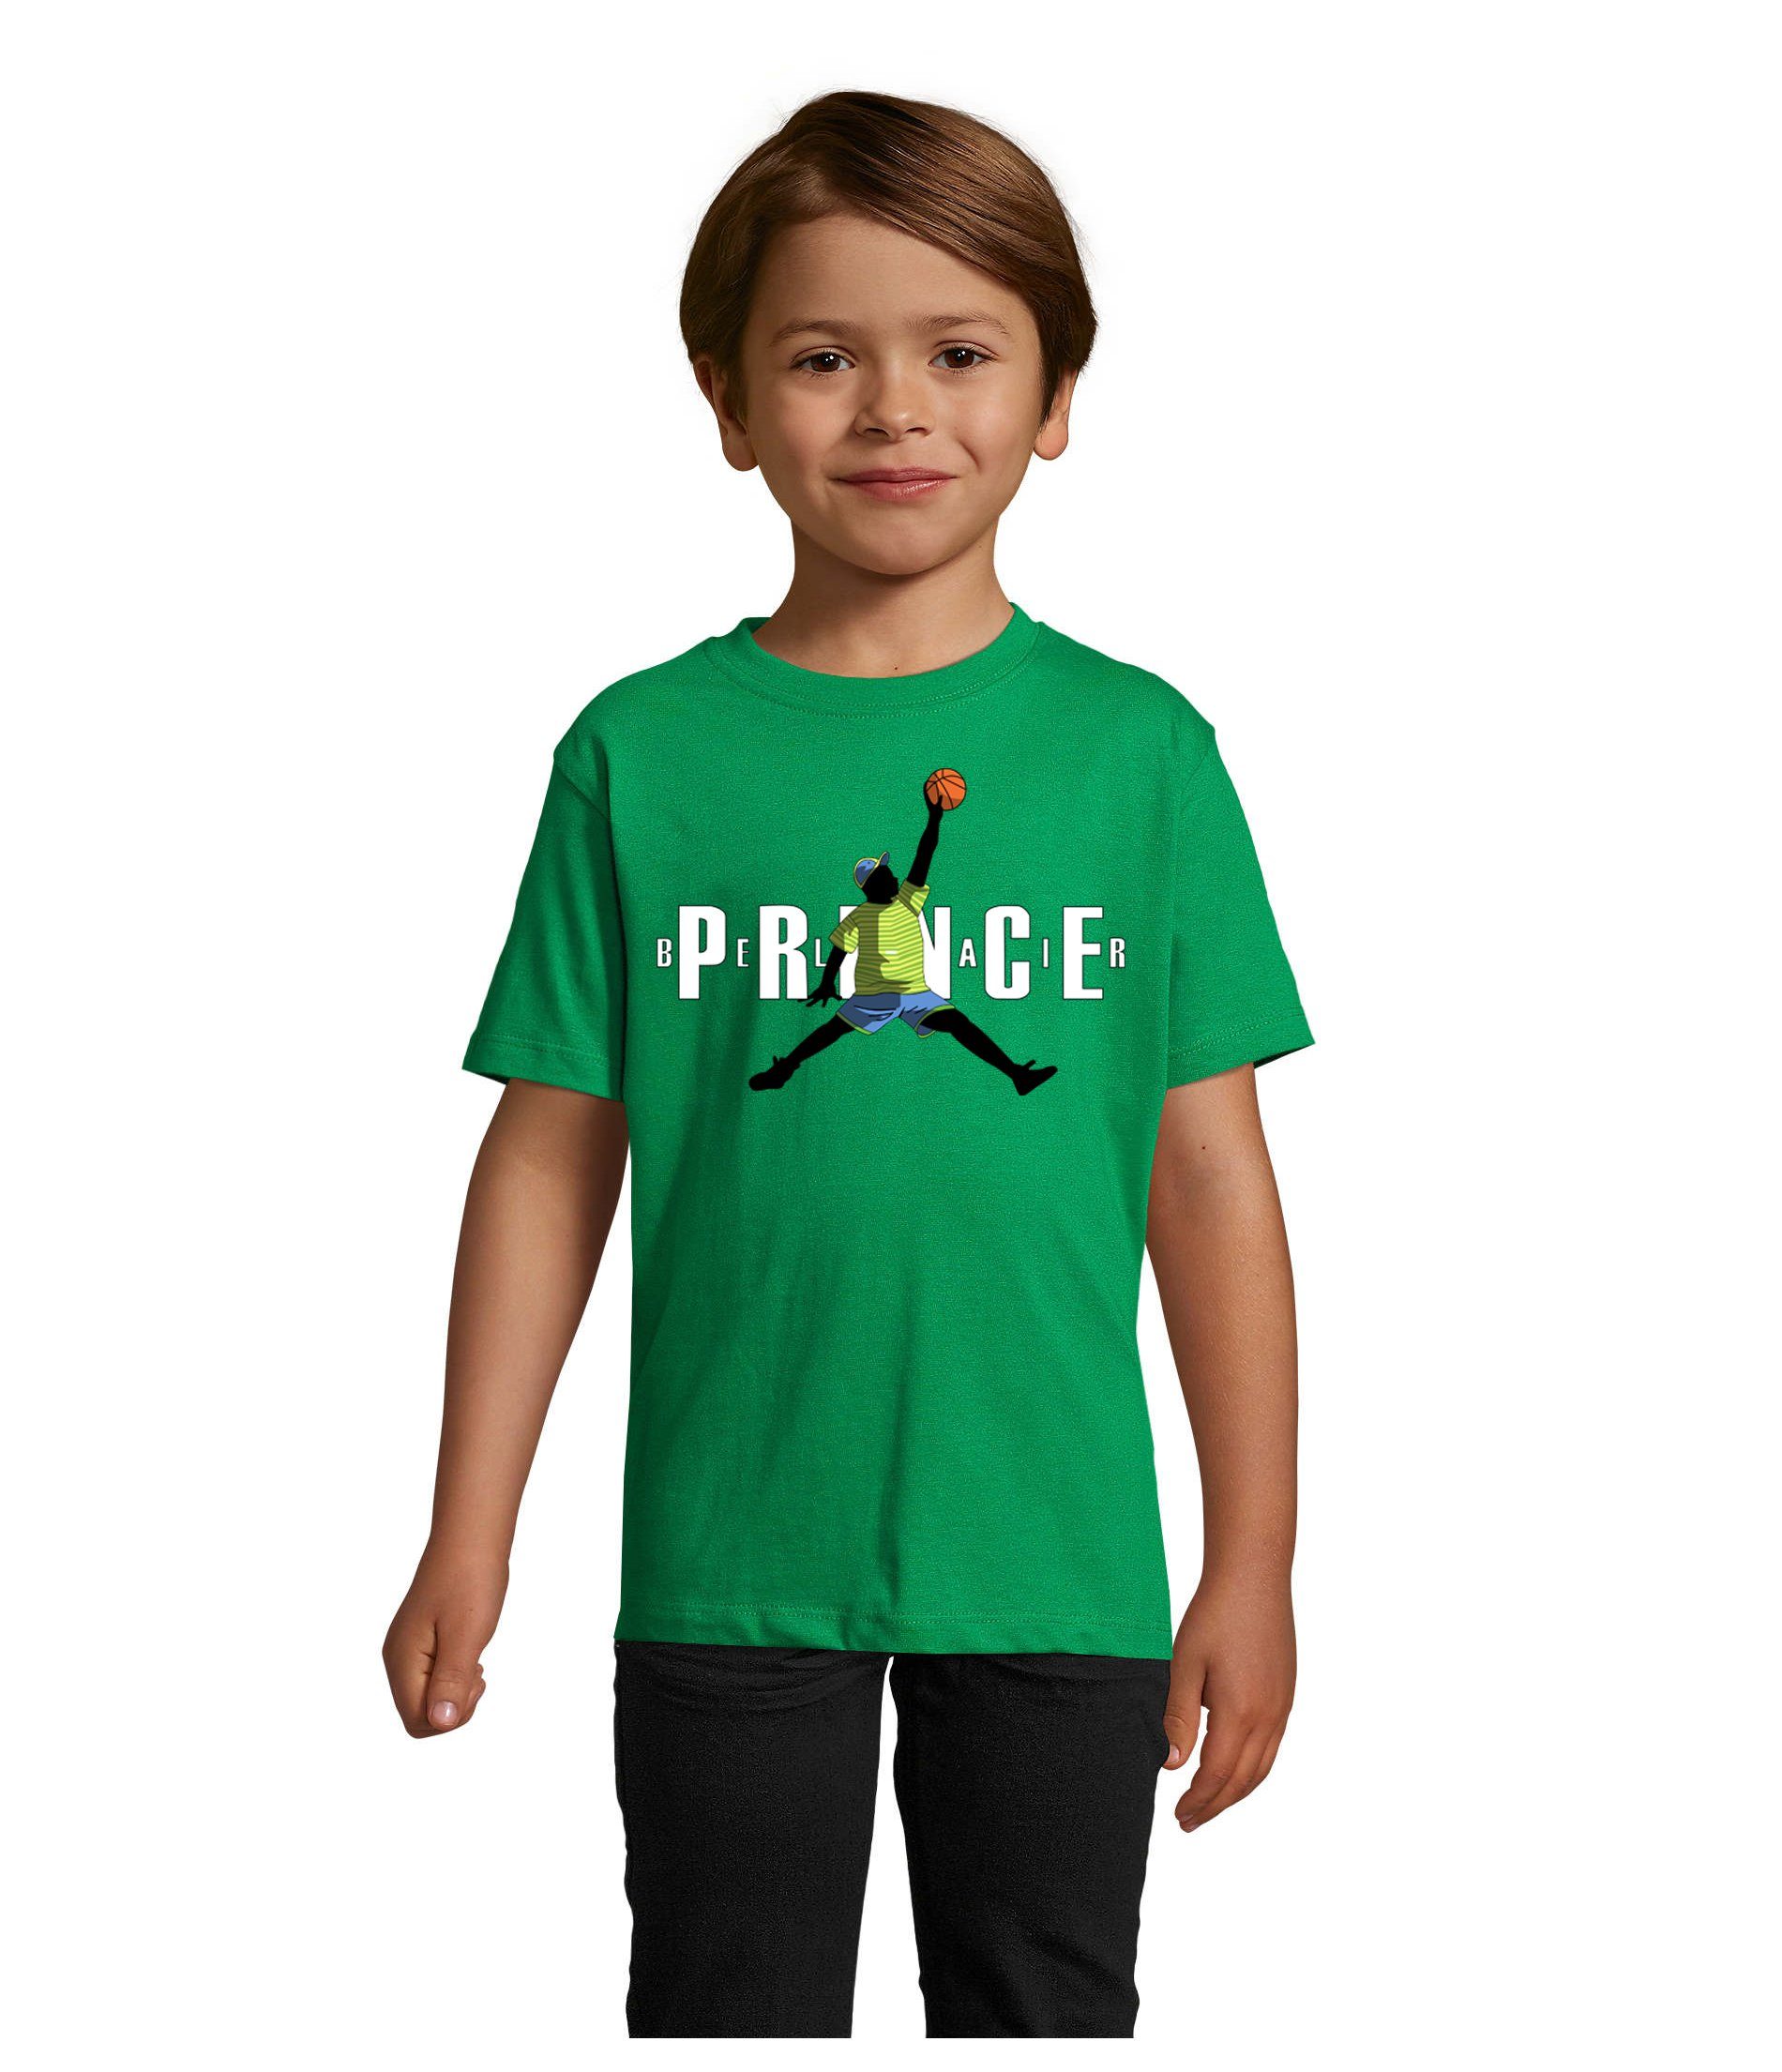 Blondie & Brownie T-Shirt Kinder Jungen & Mädchen Fresh Prince Bel Air Basketball in vielen Farben Grün